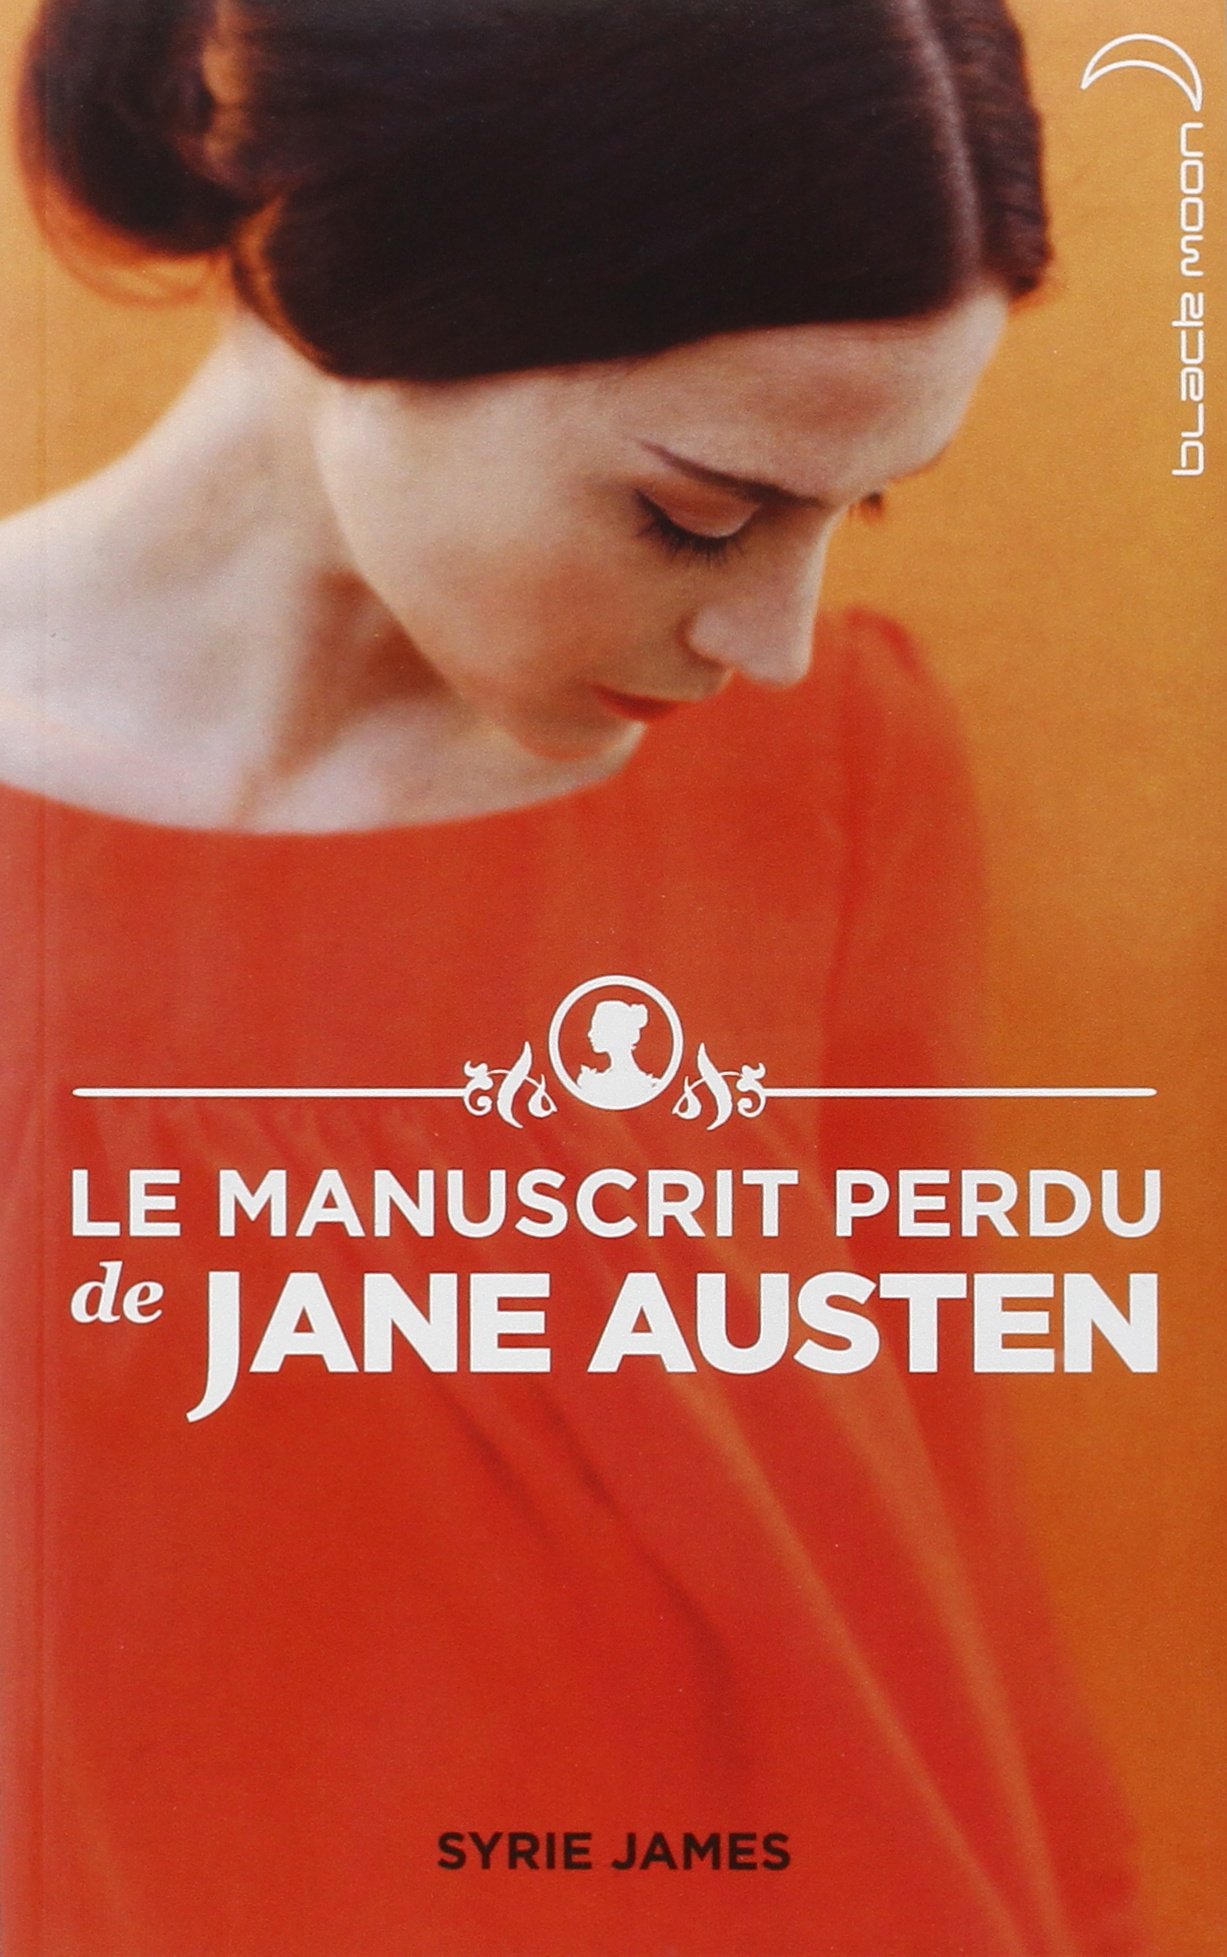 Le Manuscrit perdu de Jane Austen - Syrie James 81RJWu-2DwL